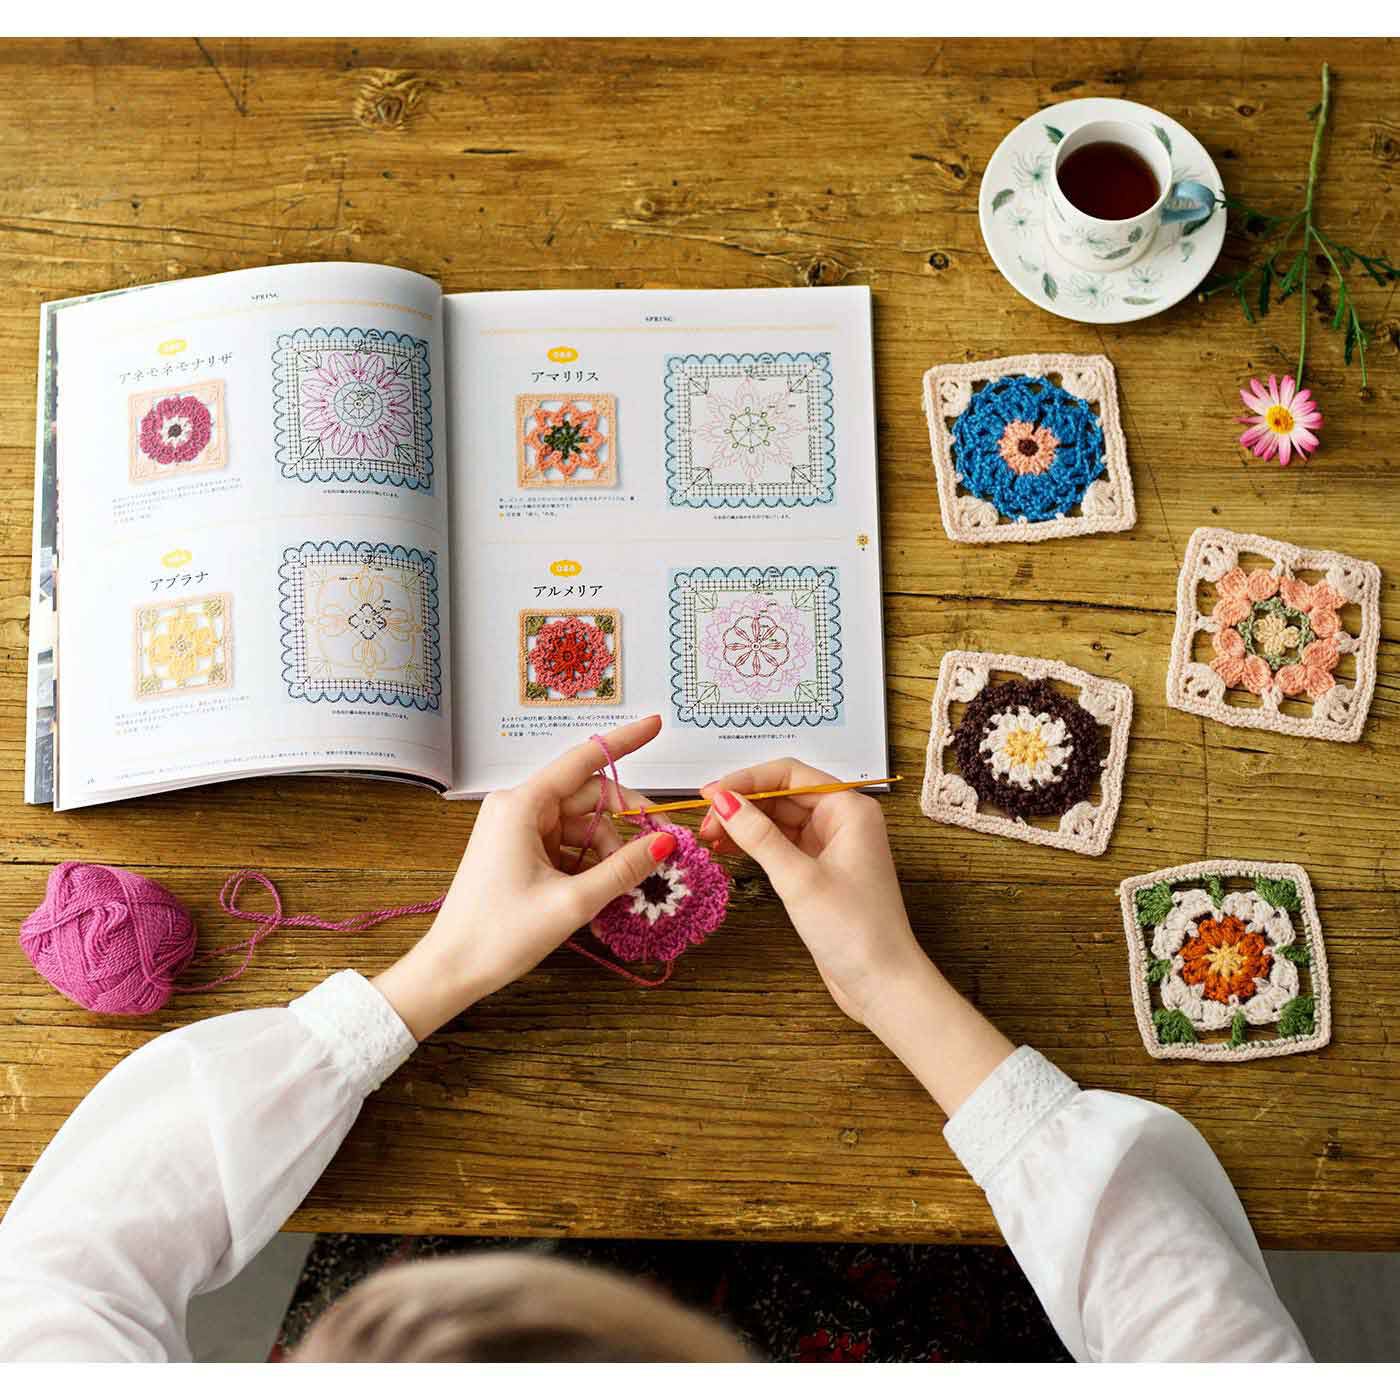 Couturier|かぎ針編みで咲かせよう 200のお花モチーフ 編み図デザイン集|できあがり写真と編み図を見やすくレイアウト。花言葉も掲載されていて、眺めるだけでもたのしい！